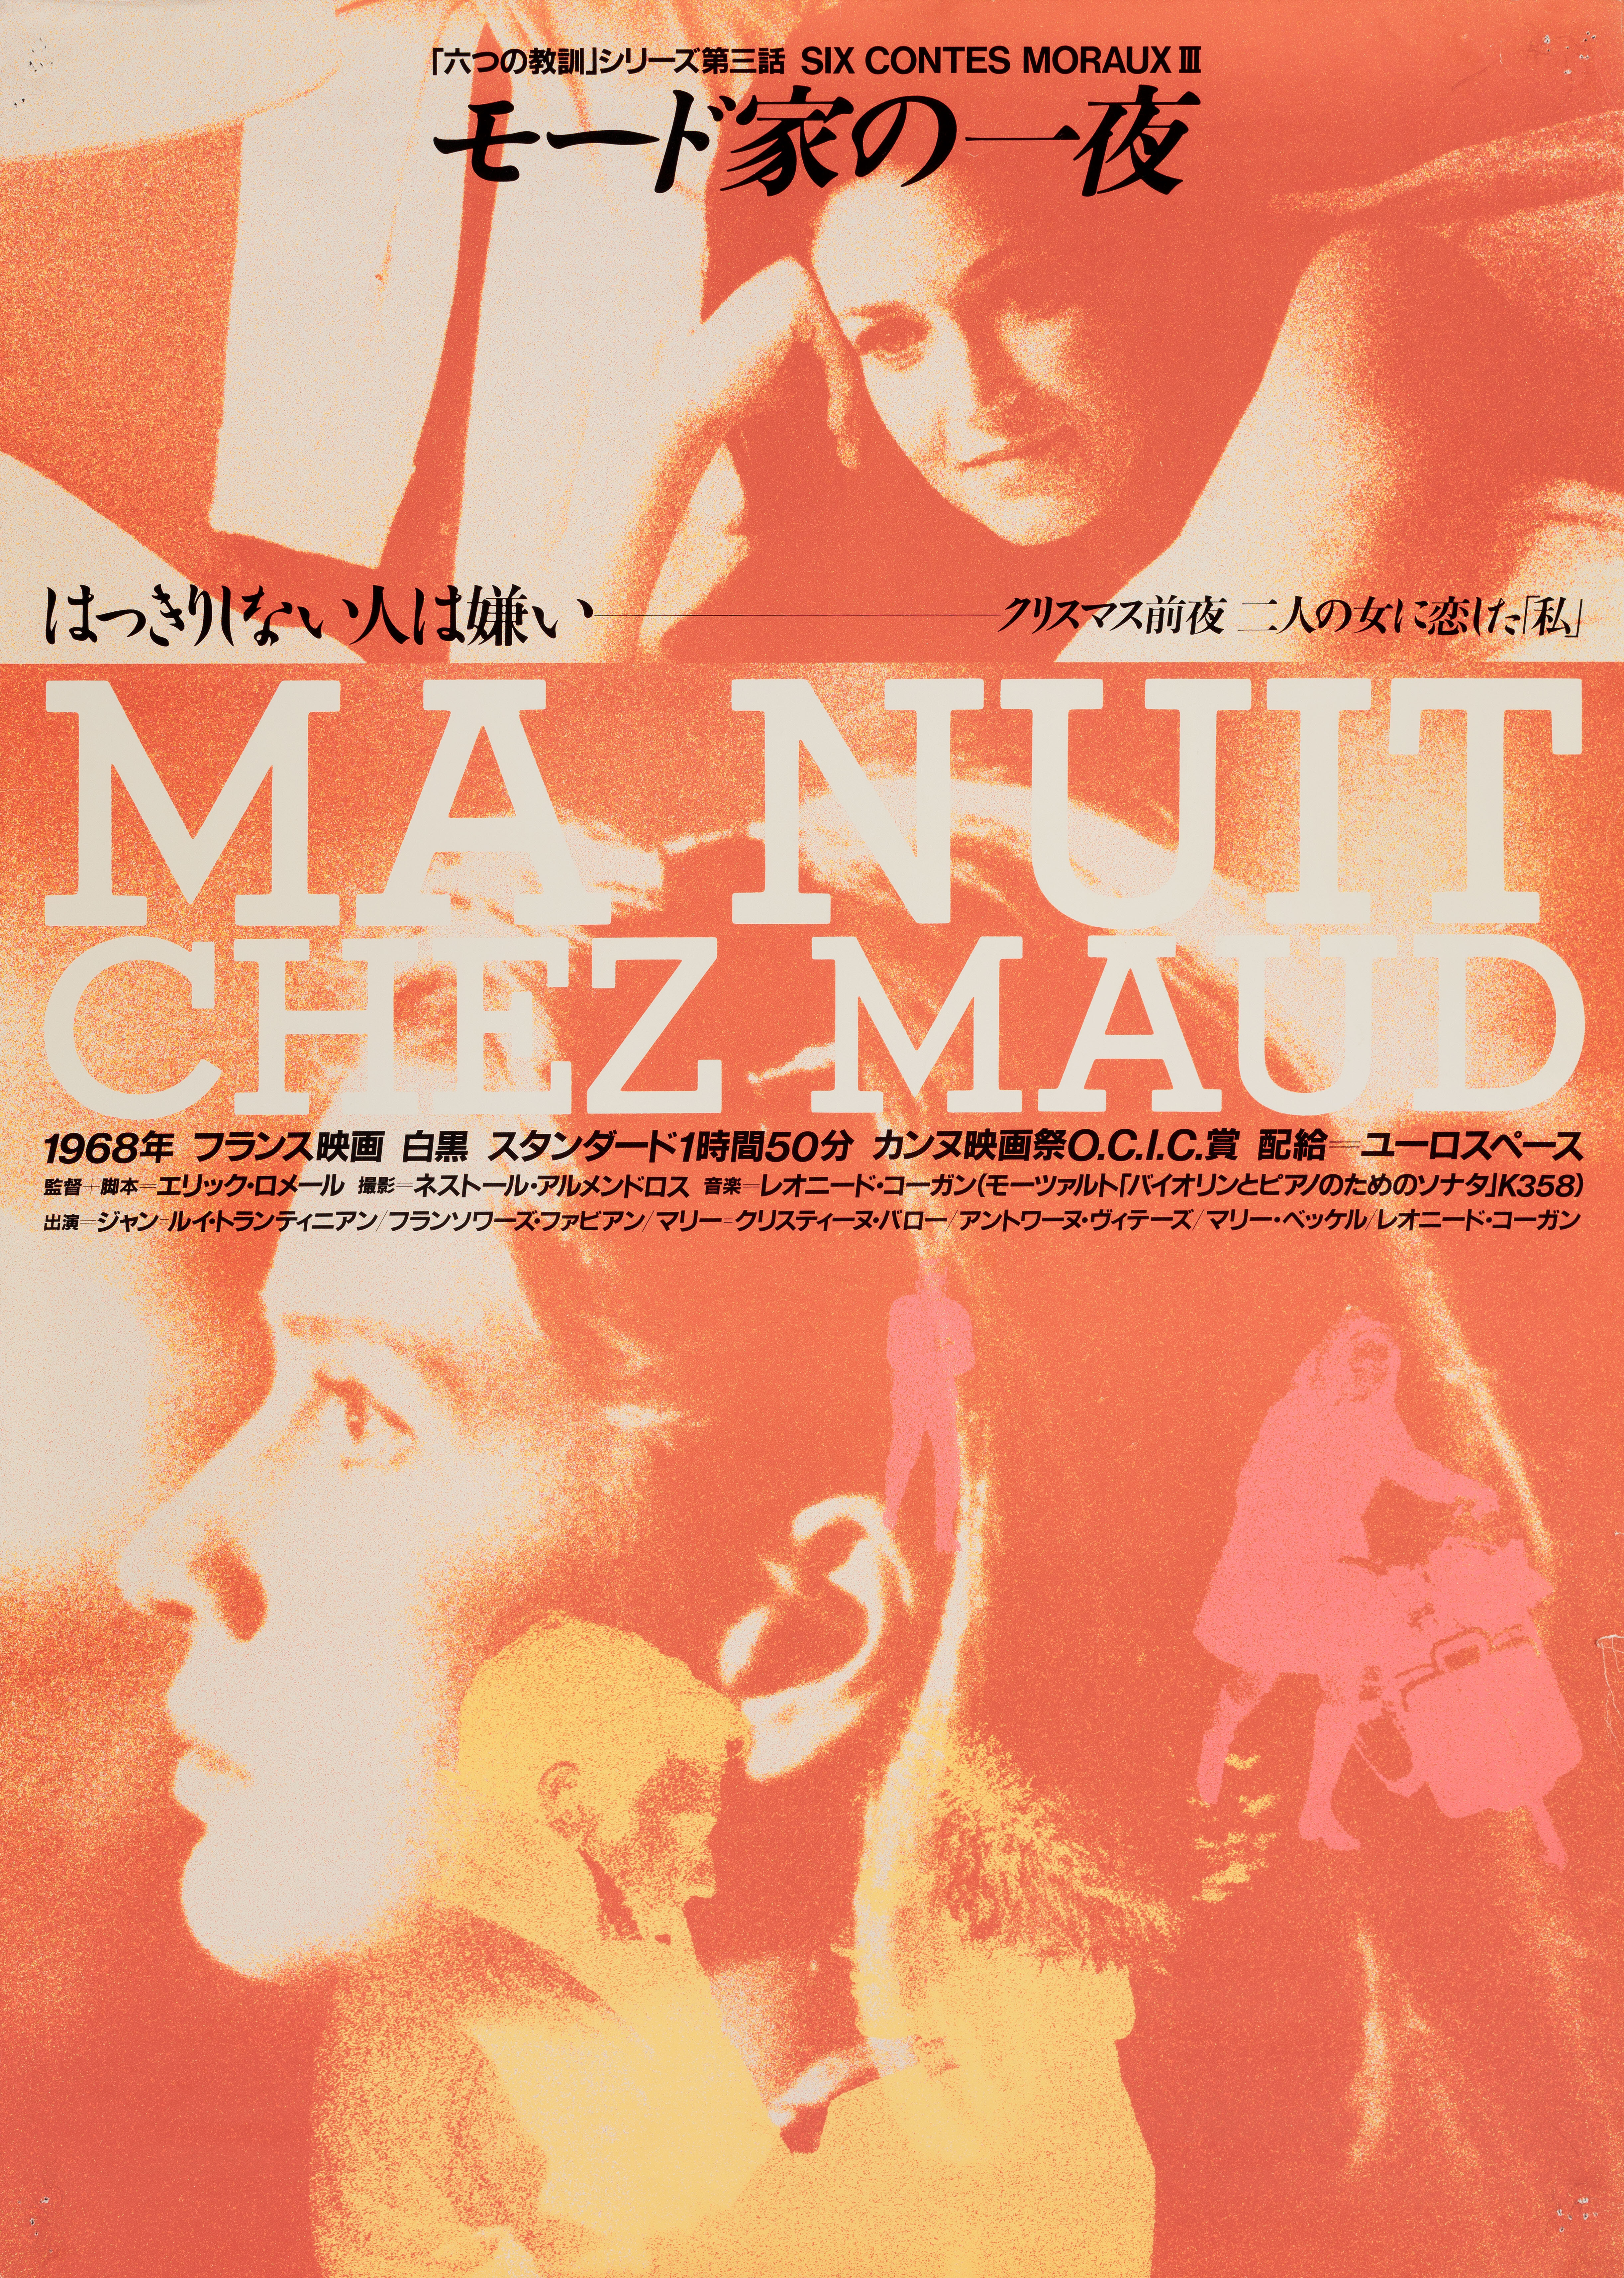 Ночь у Мод (My Night at Mauds, 1969), режиссёр Эрик Ромер, японский постер к фильму (графический дизайн, 1988 год)